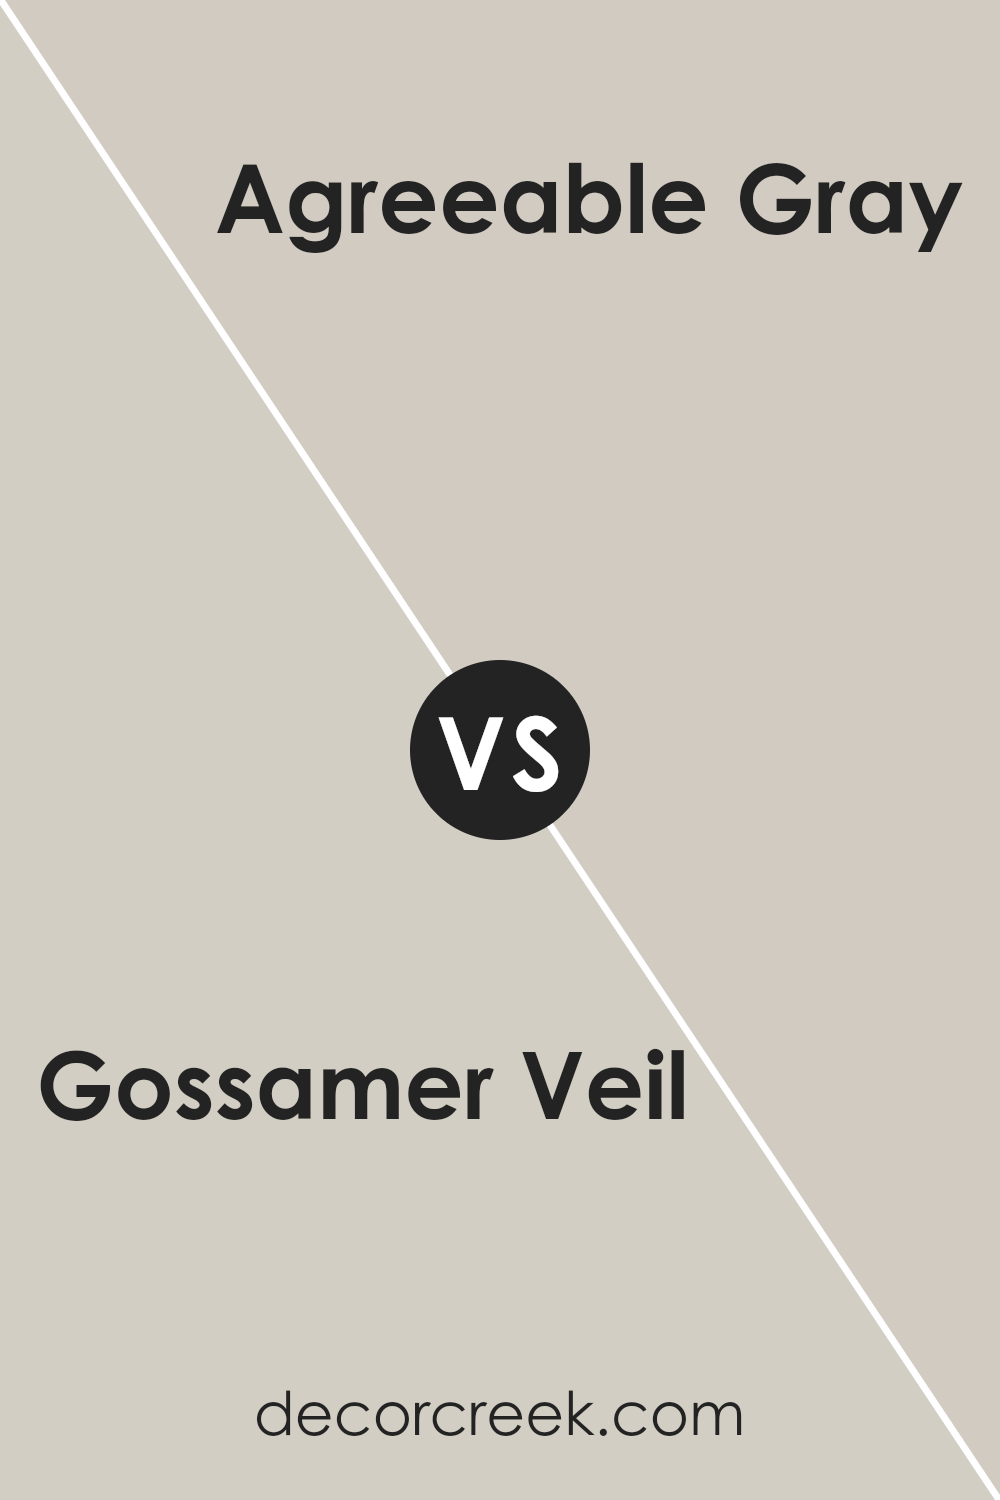 gossamer_veil_sw_9165_vs_agreeable_gray_sw_7029